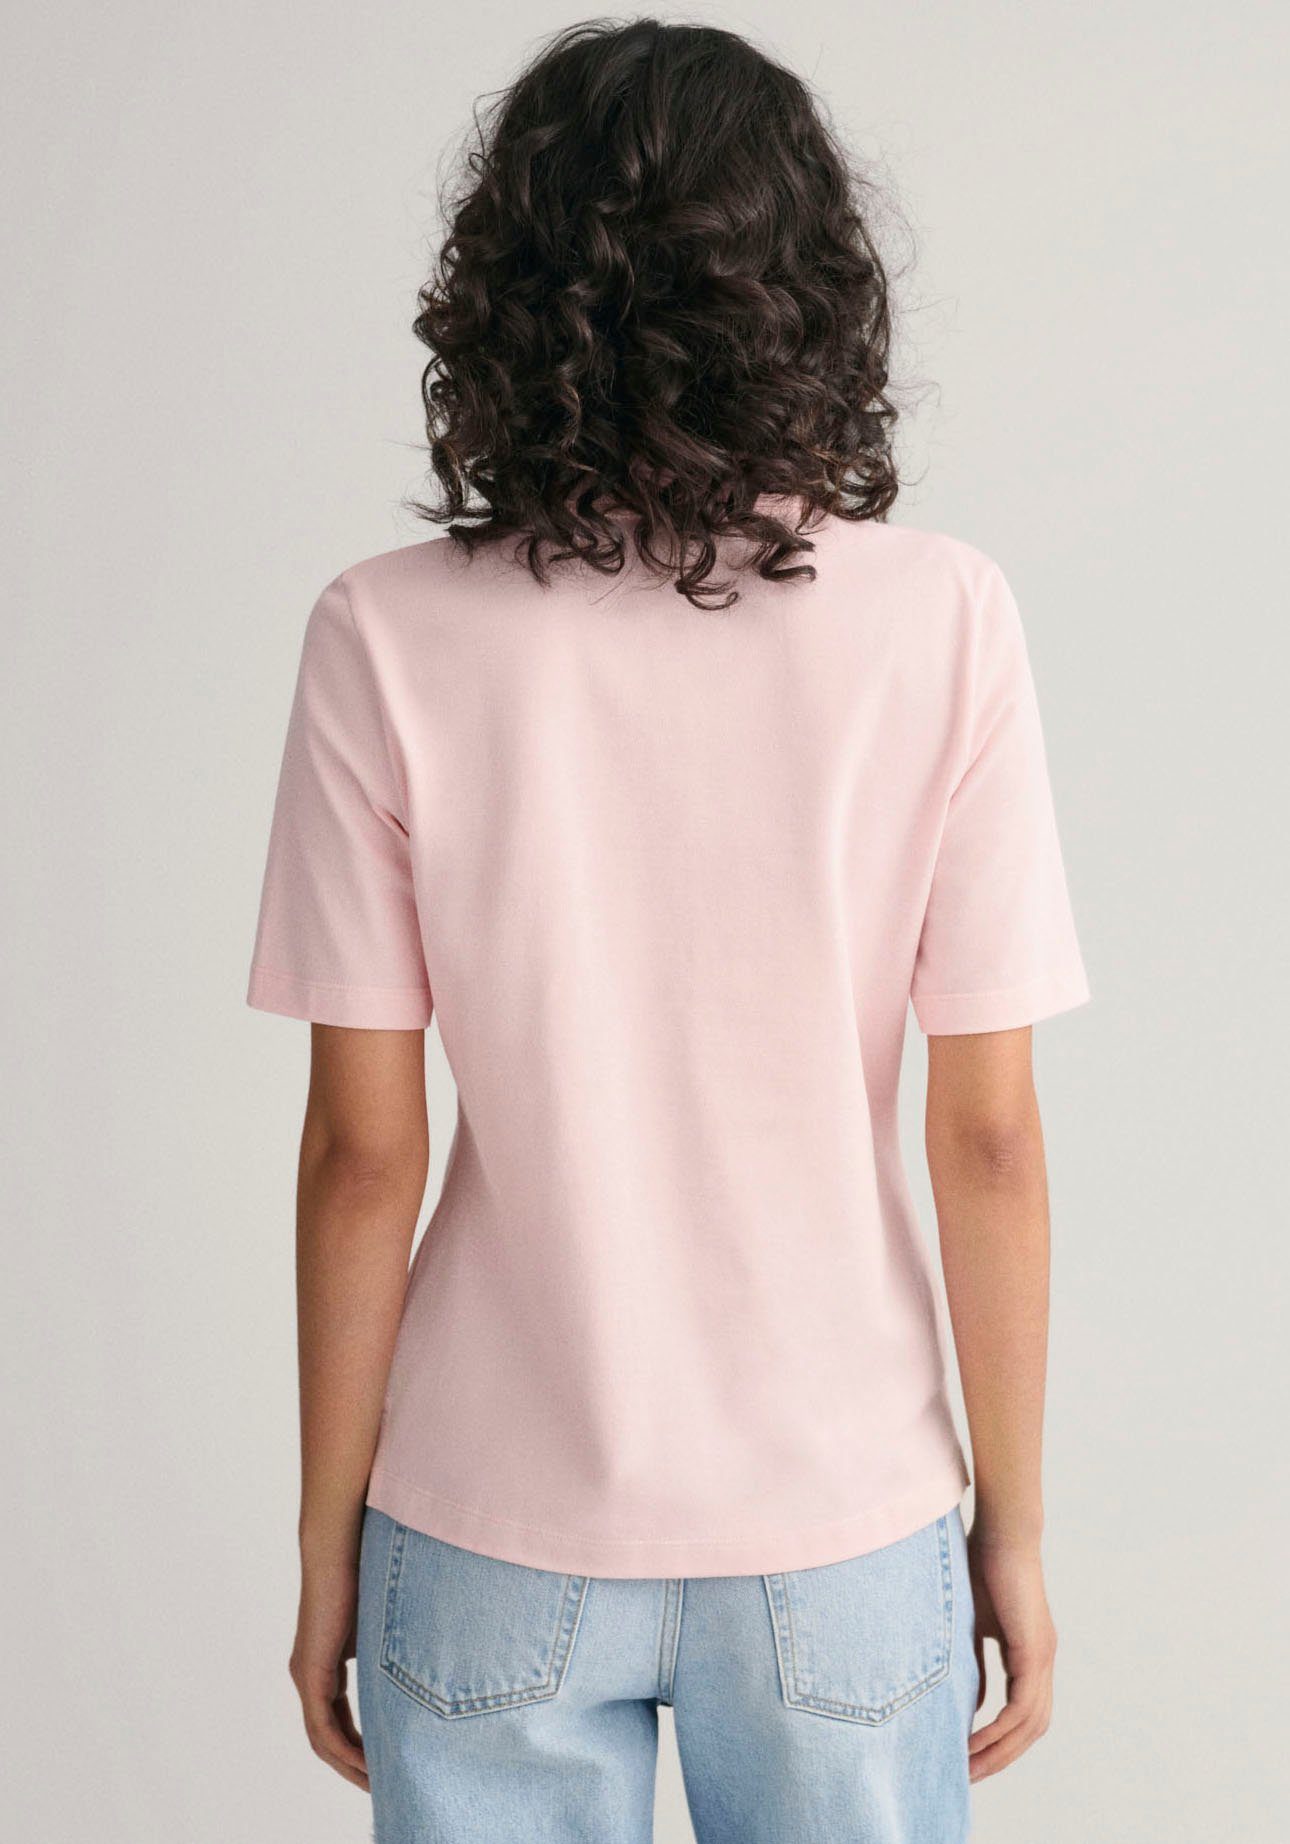 Poloshirt SHIELD POLO Brust pink grafischer Gant faded Logostickerei mit KA SLIM auf PIQUE der